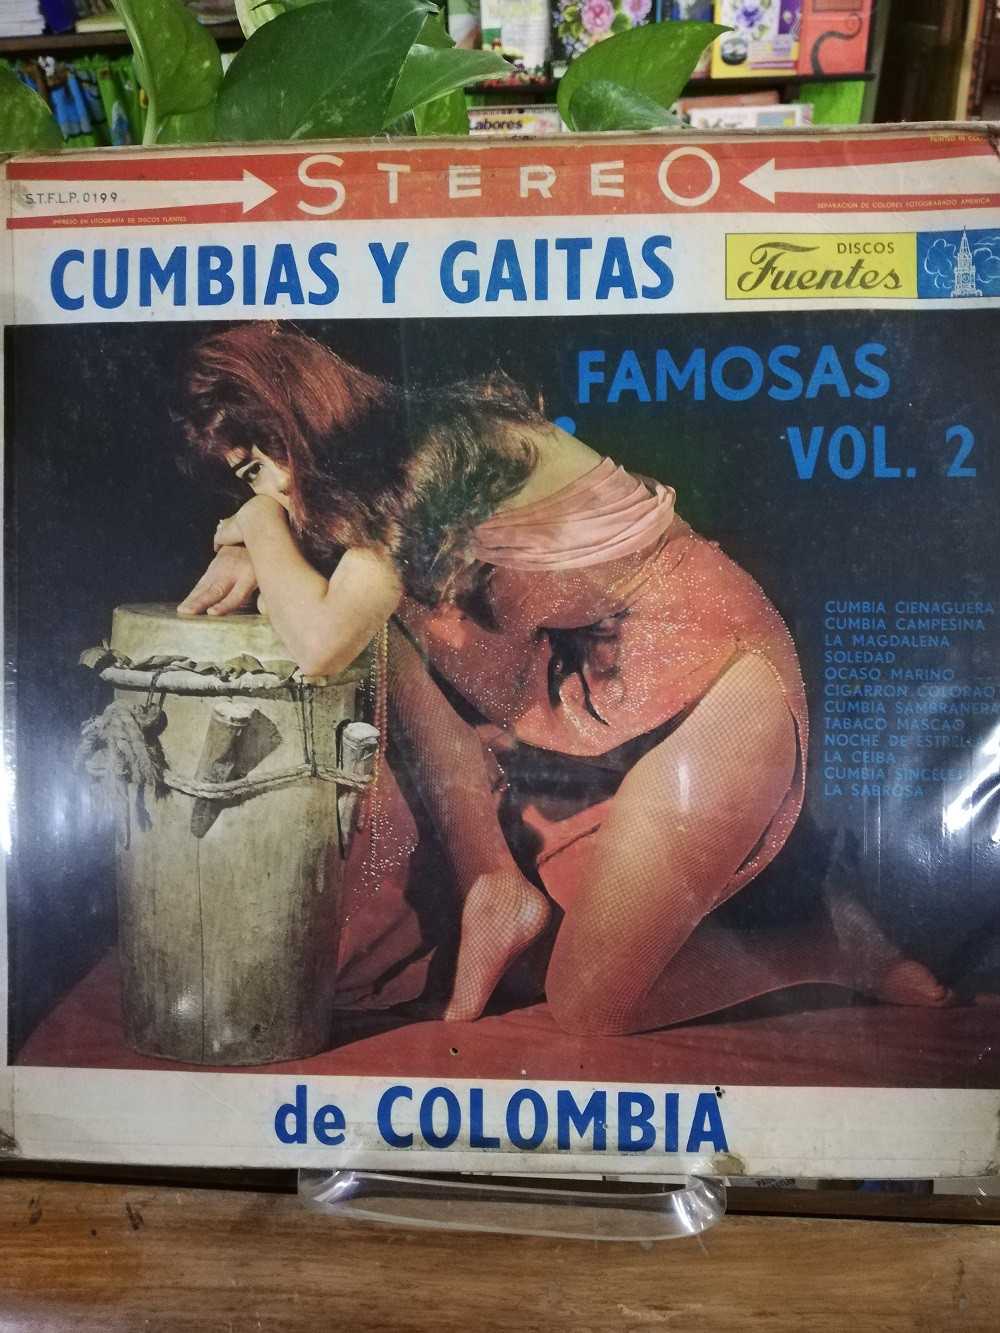 Imagen LP CUMBIAS Y GAITAS FAMOSAS DE COLOMBIA VOL. 2 1